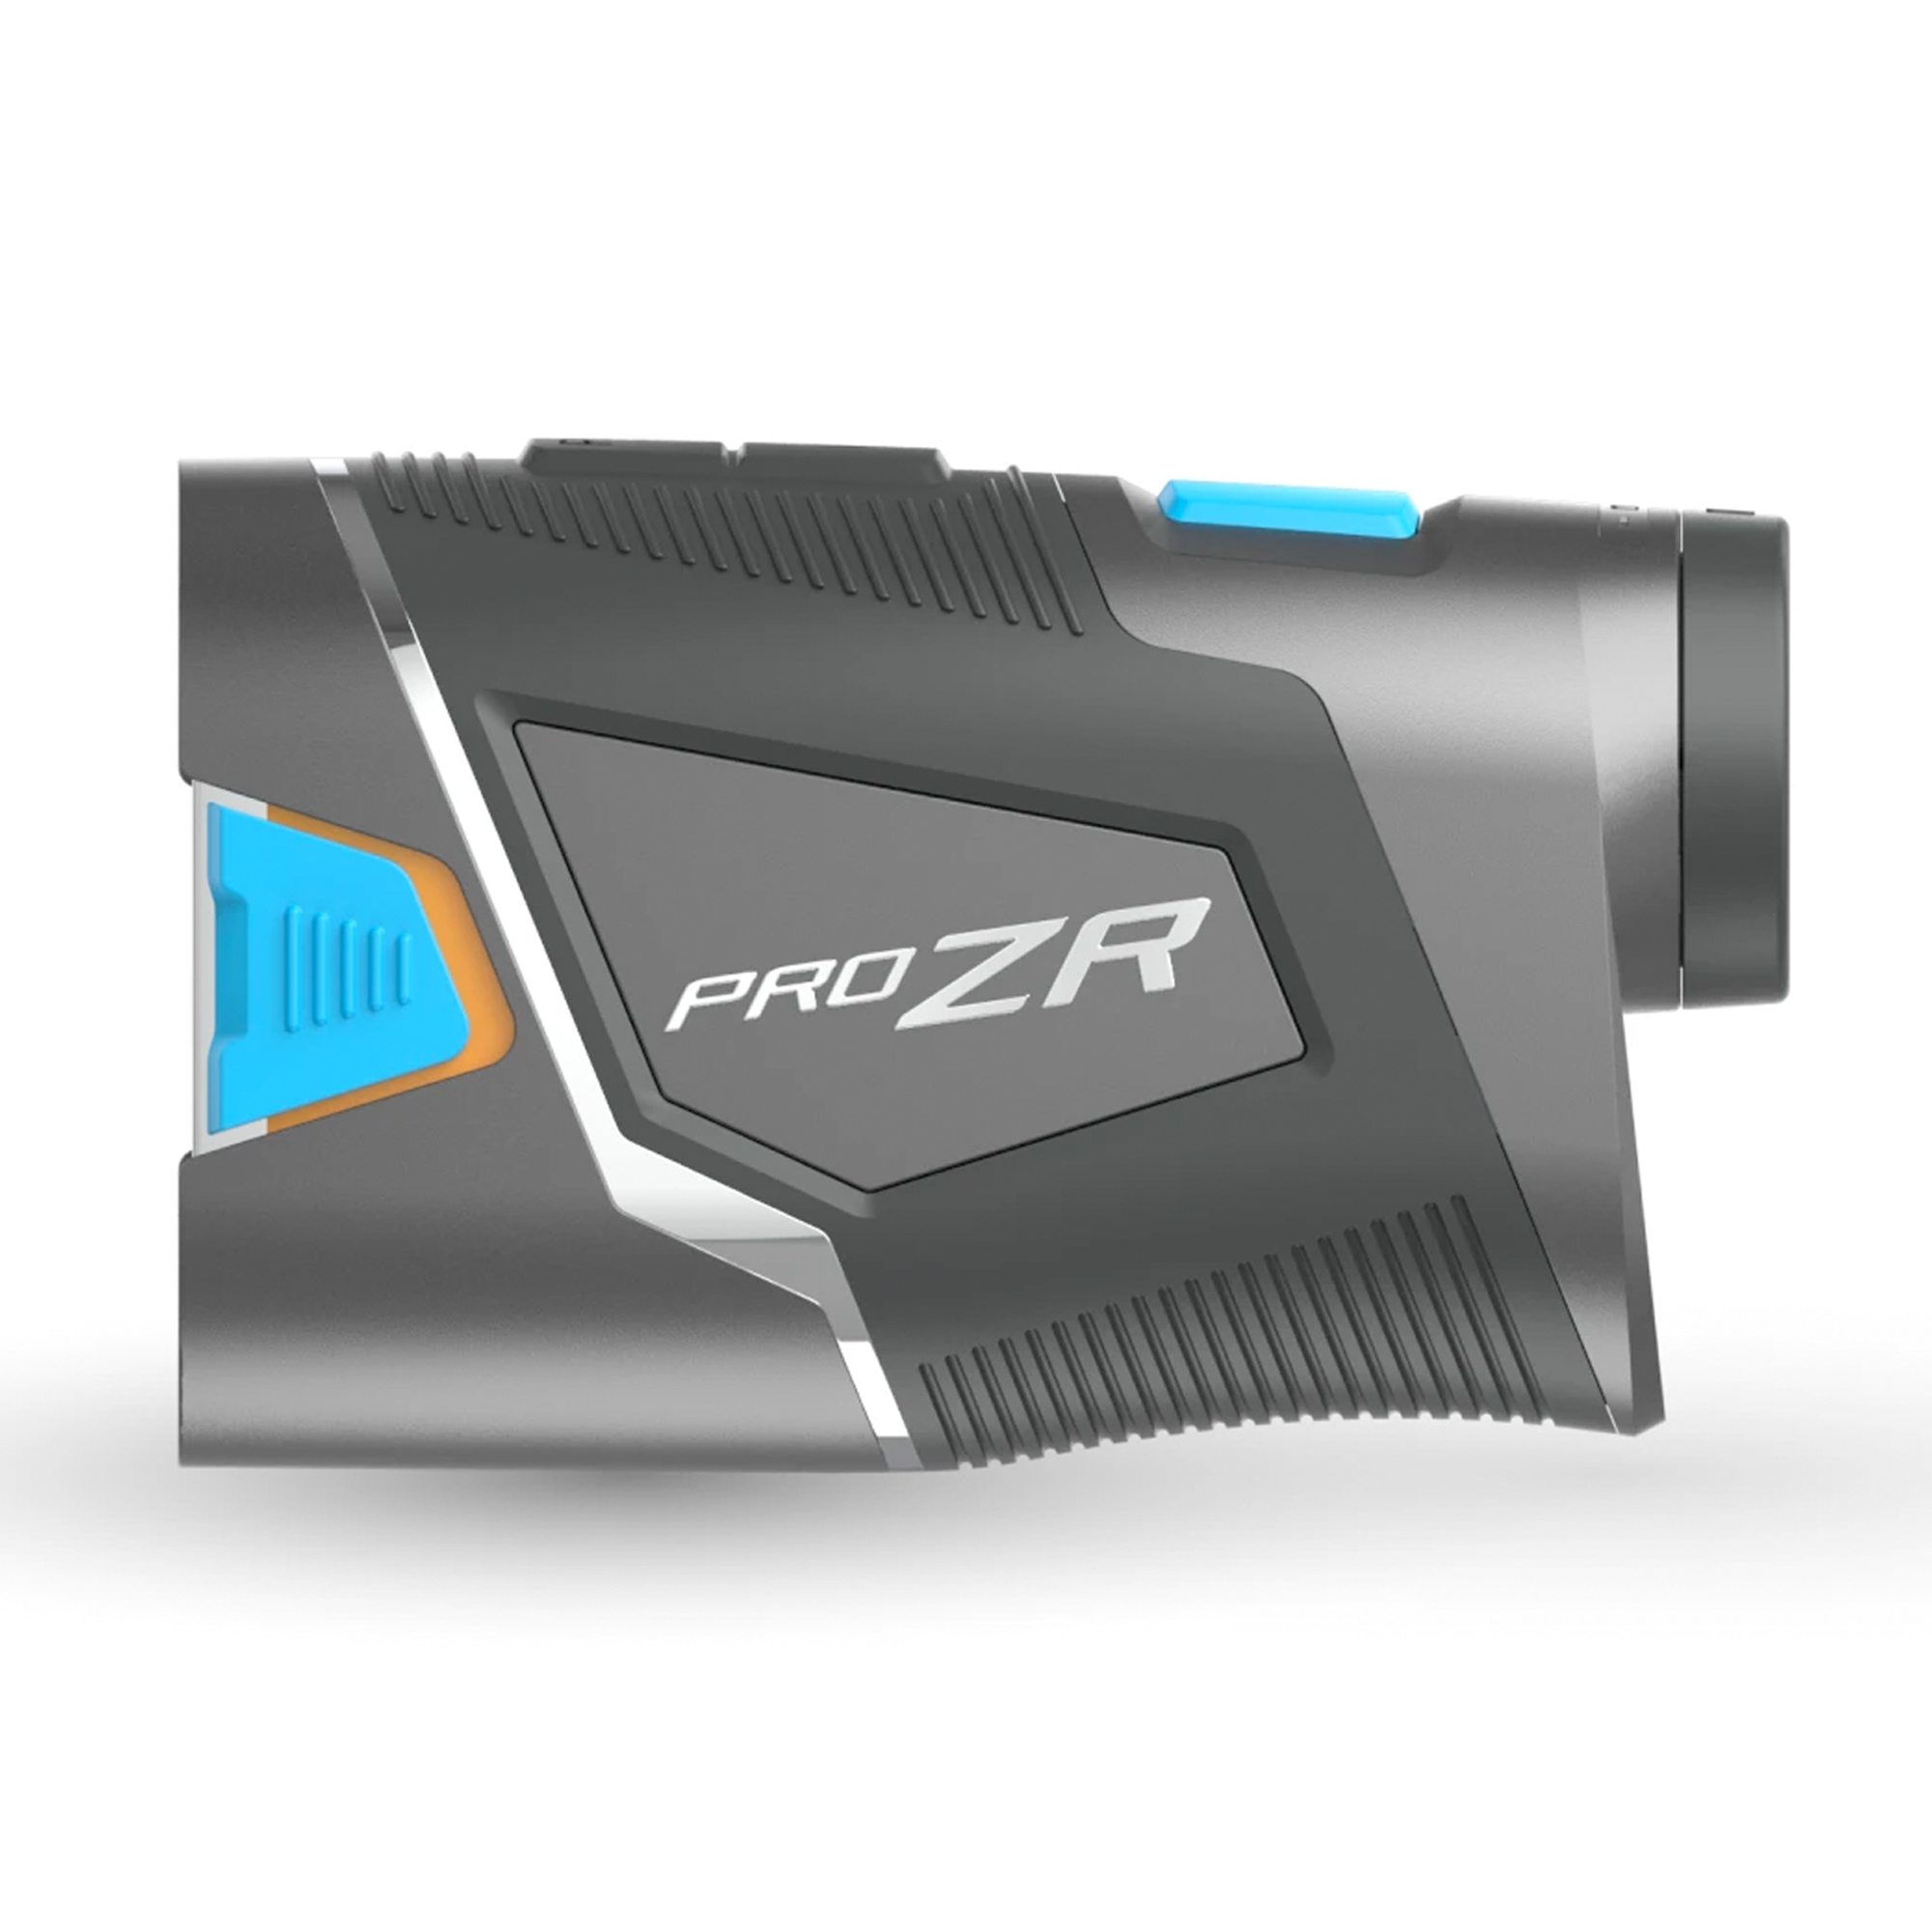 Shot Scope PRO ZR Premium Laser Rangefinder 